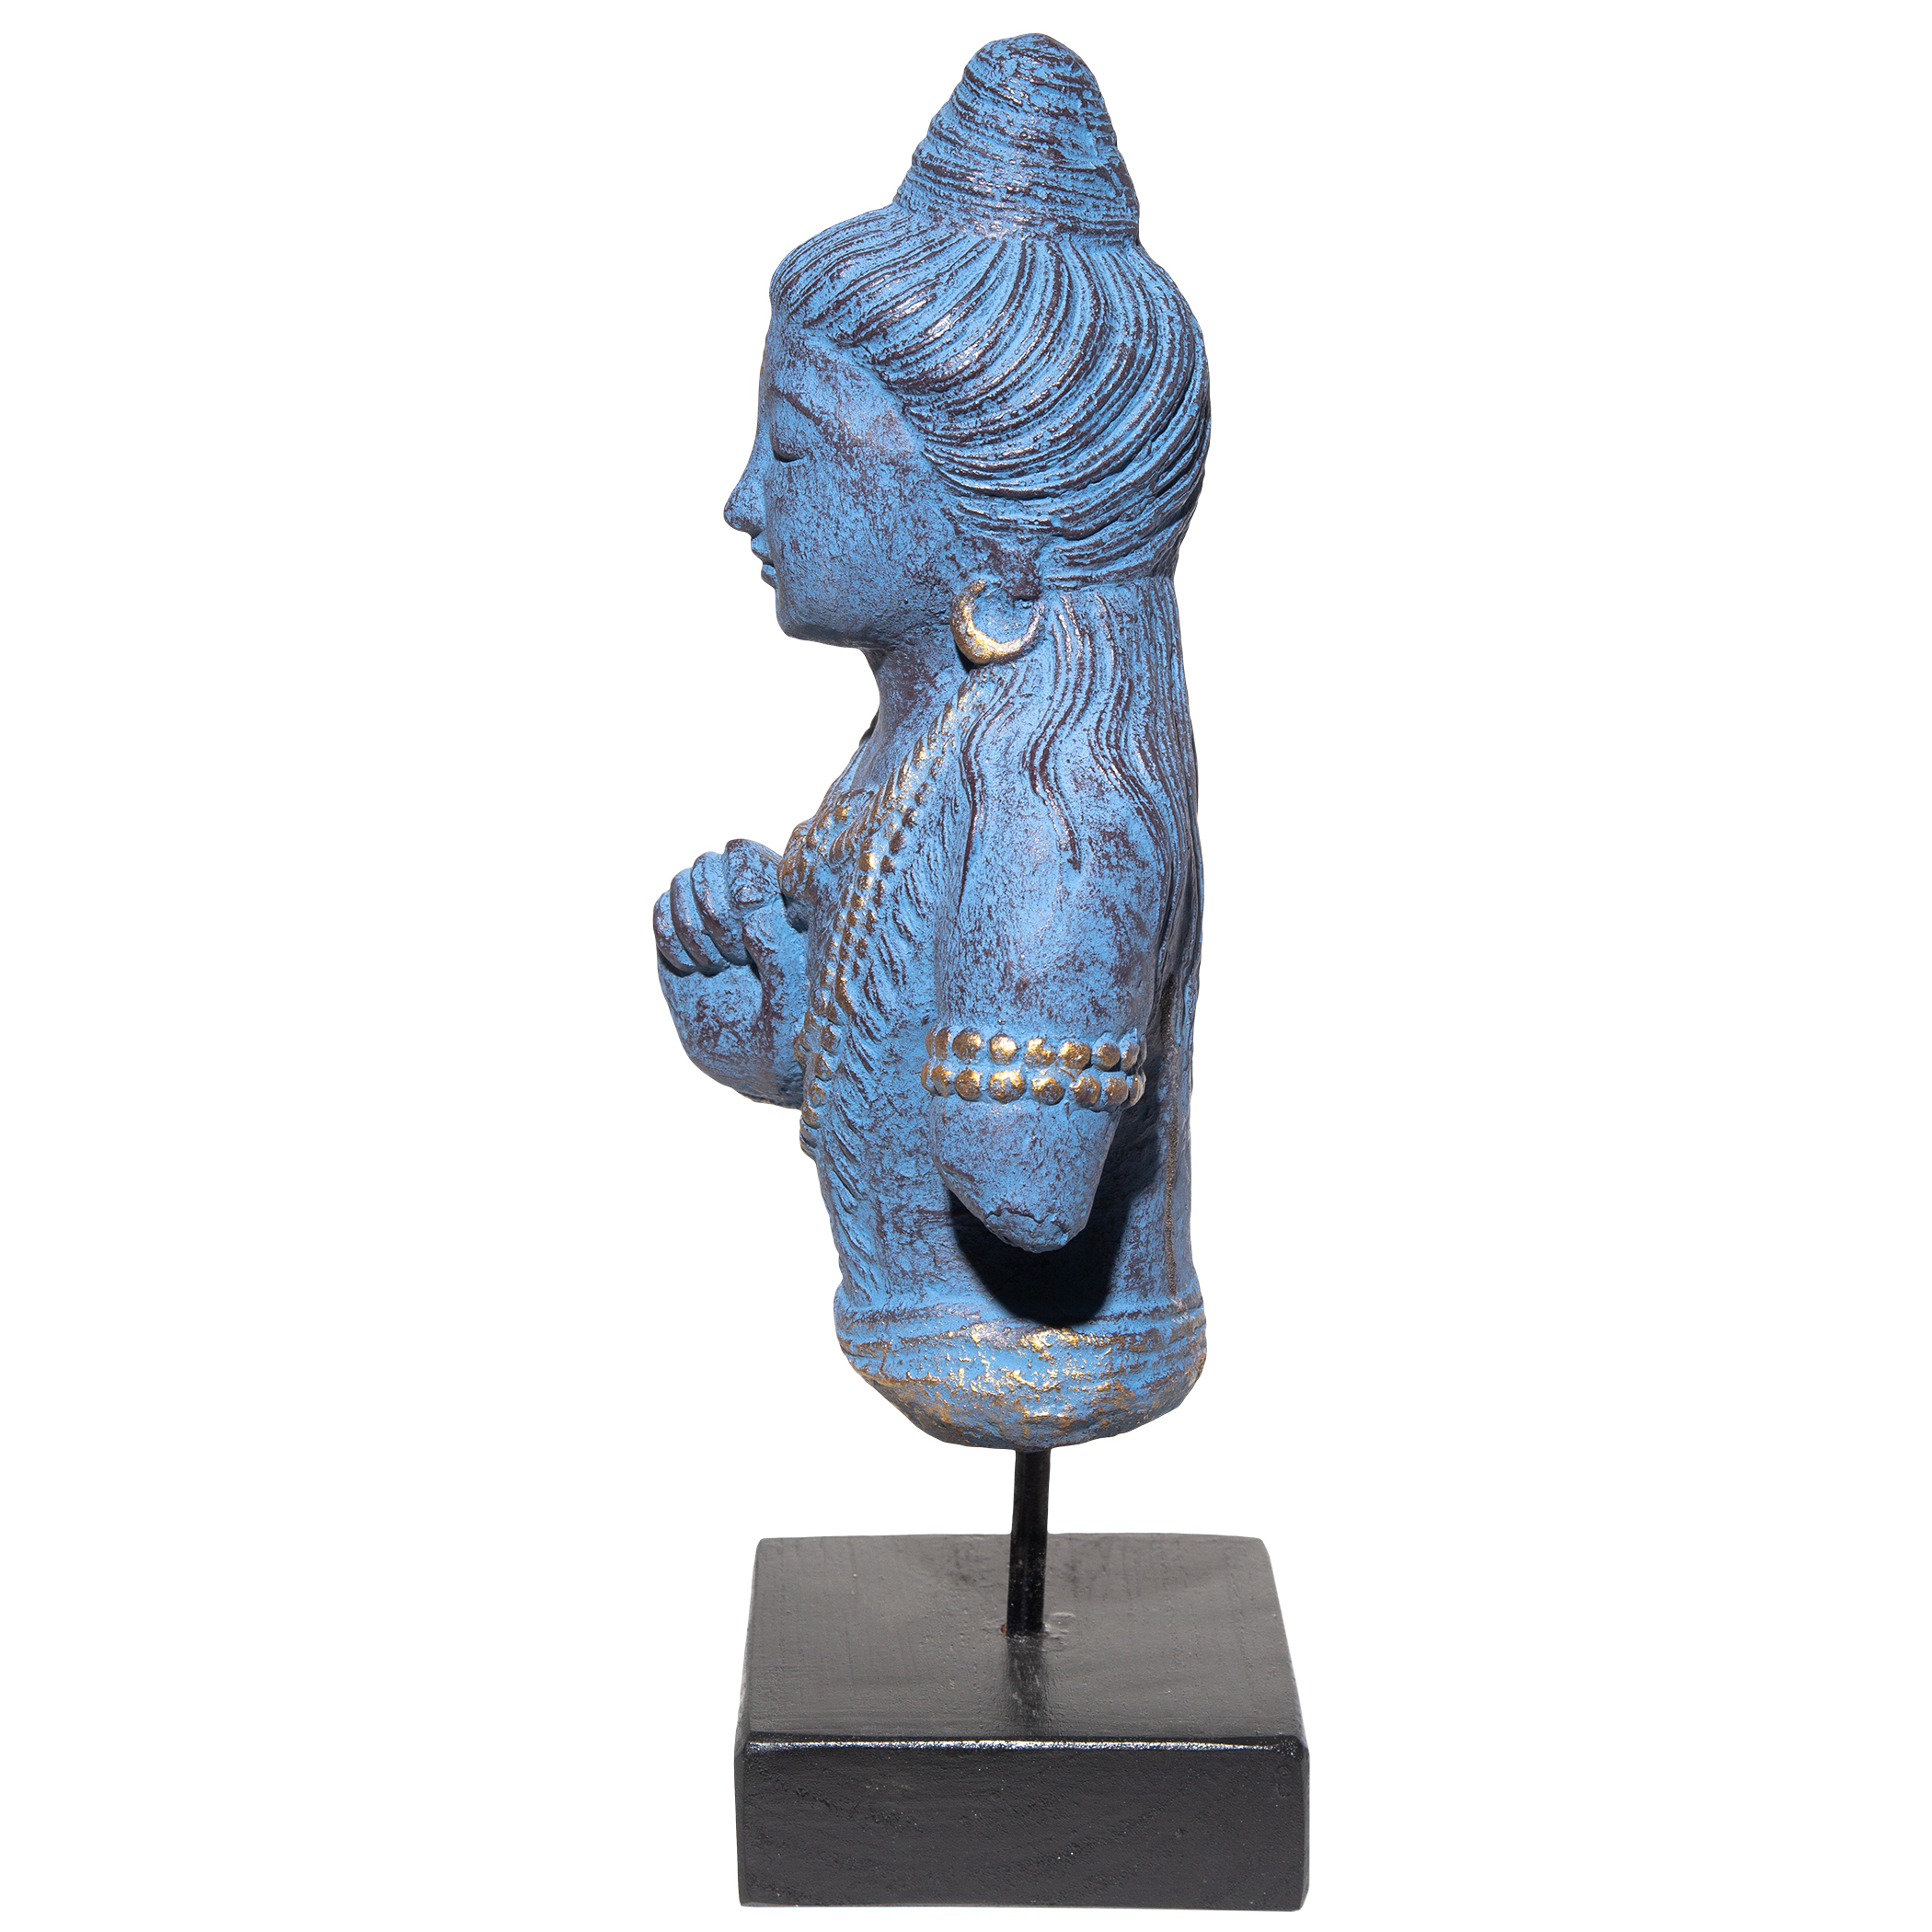 Shiva Figur